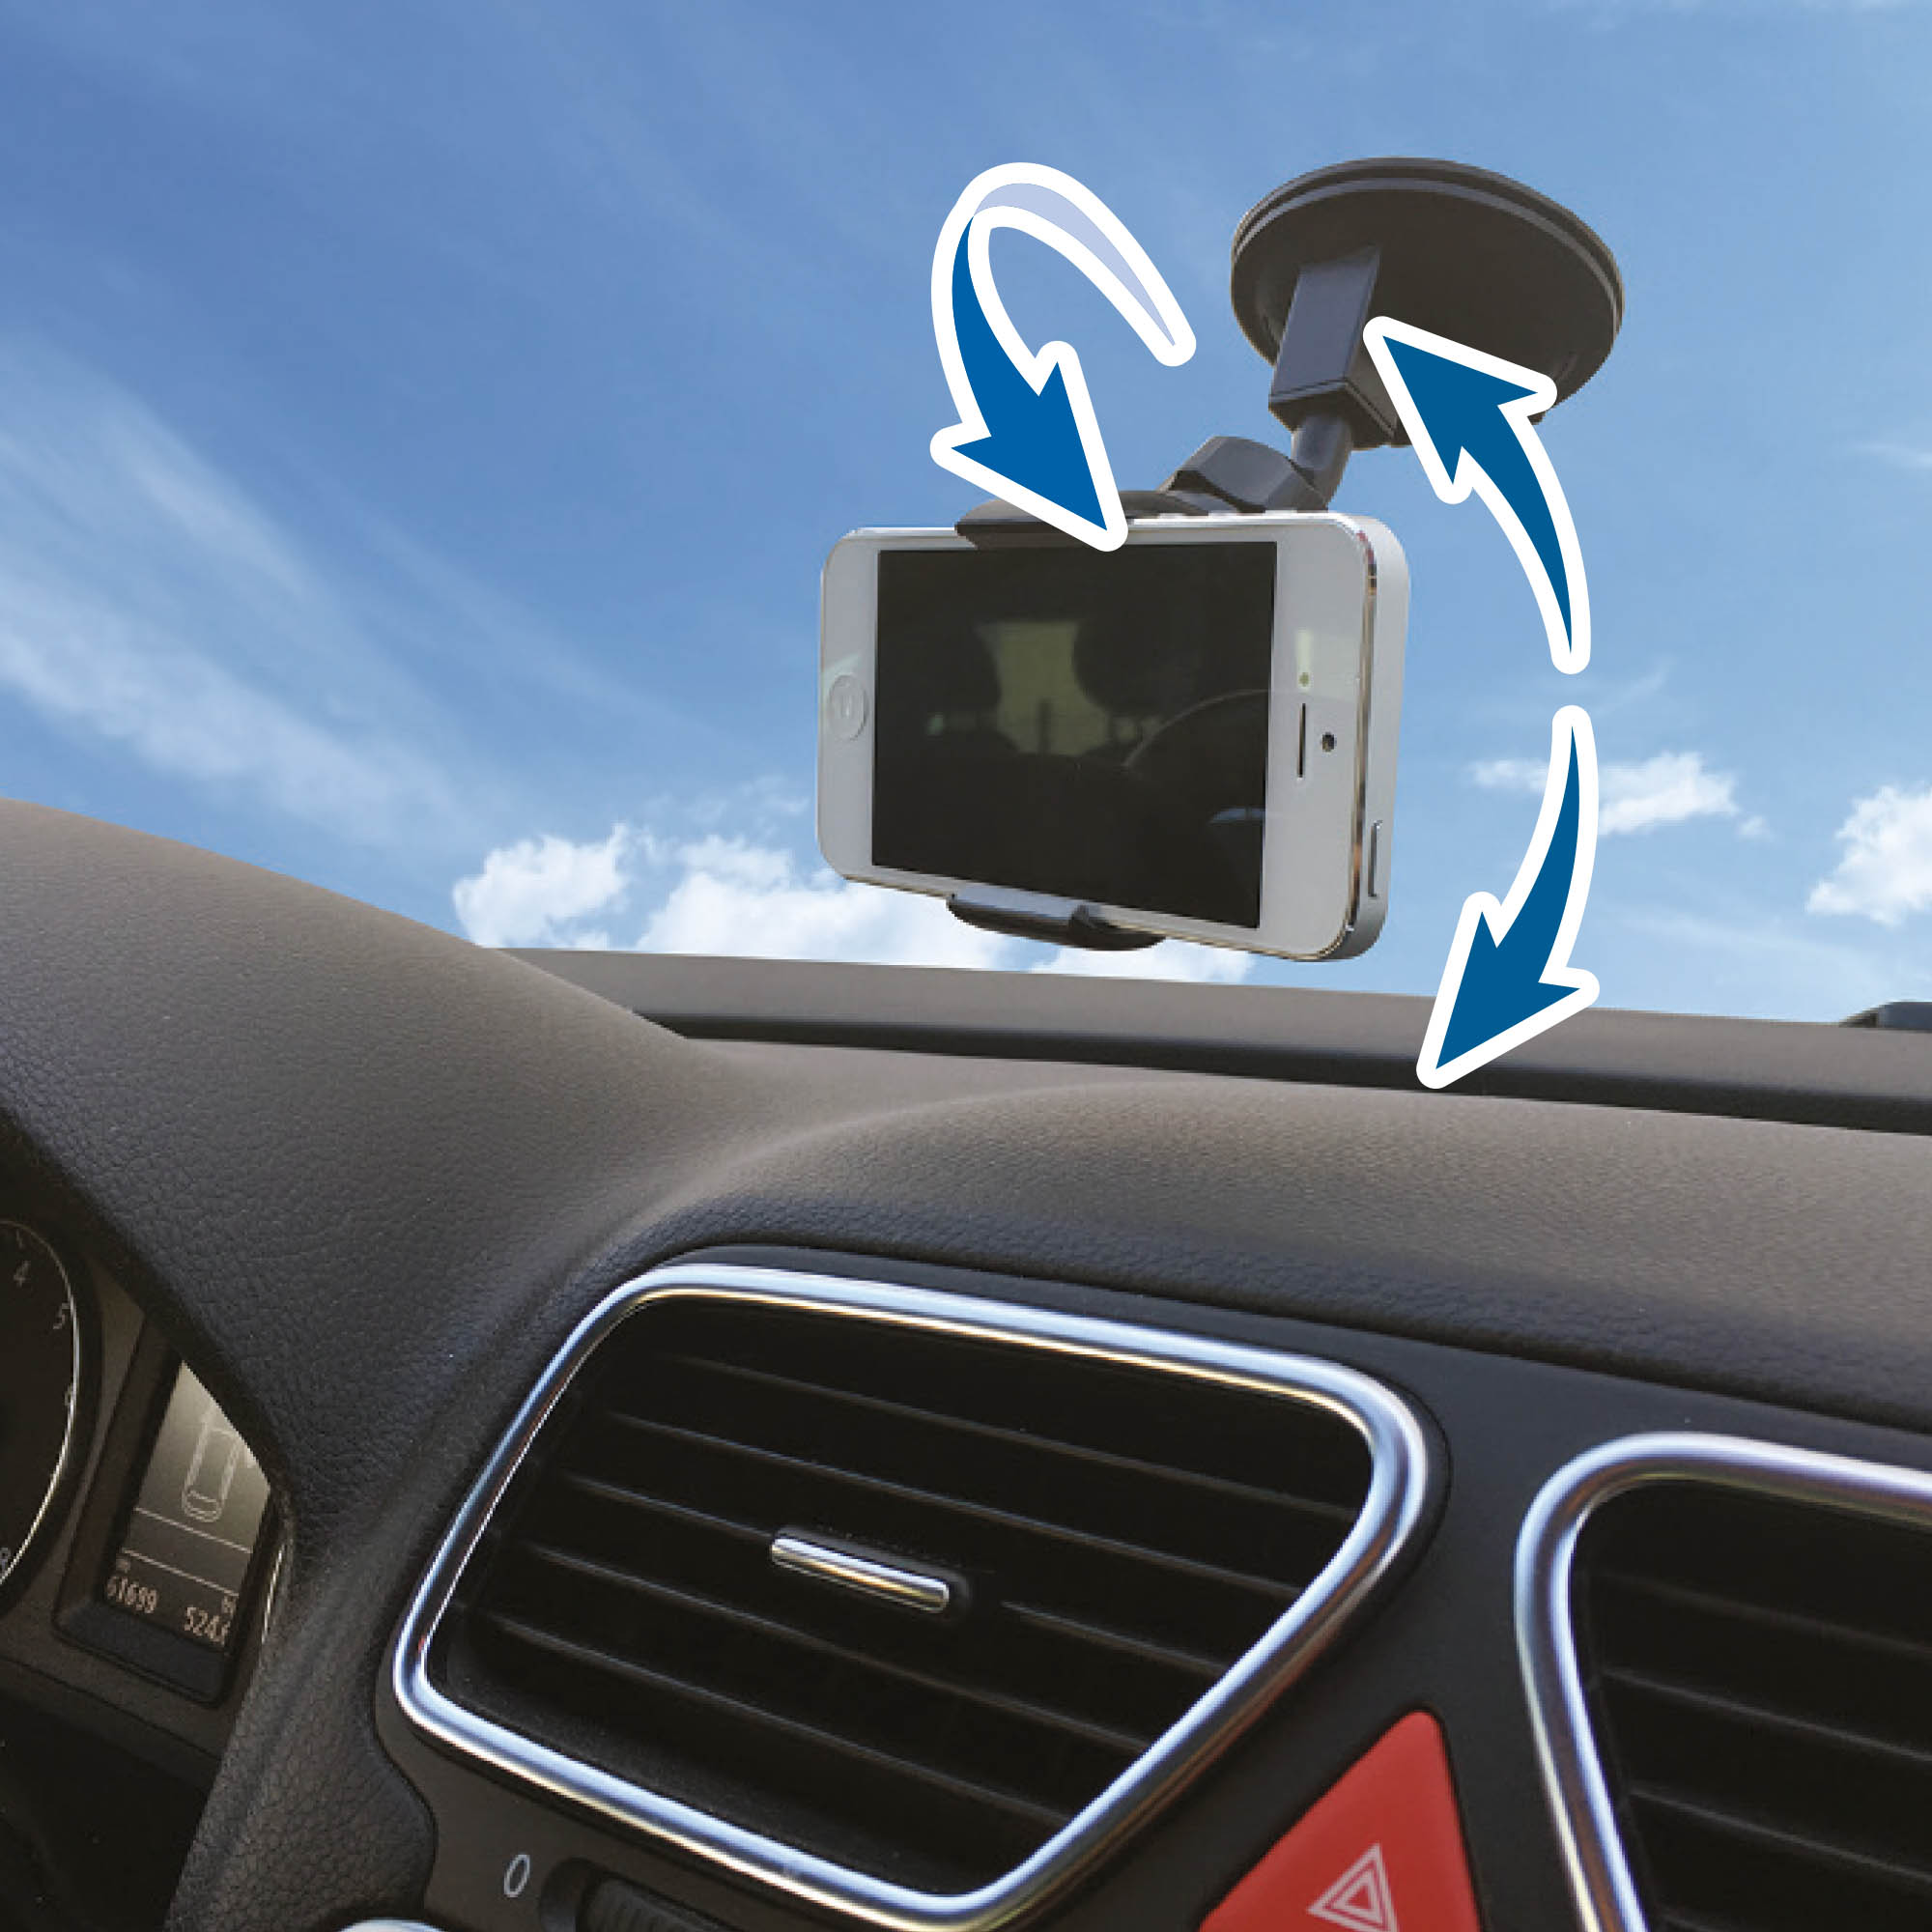 supporto auto universale ventosa a pinza per smartphone cellulare navigatore